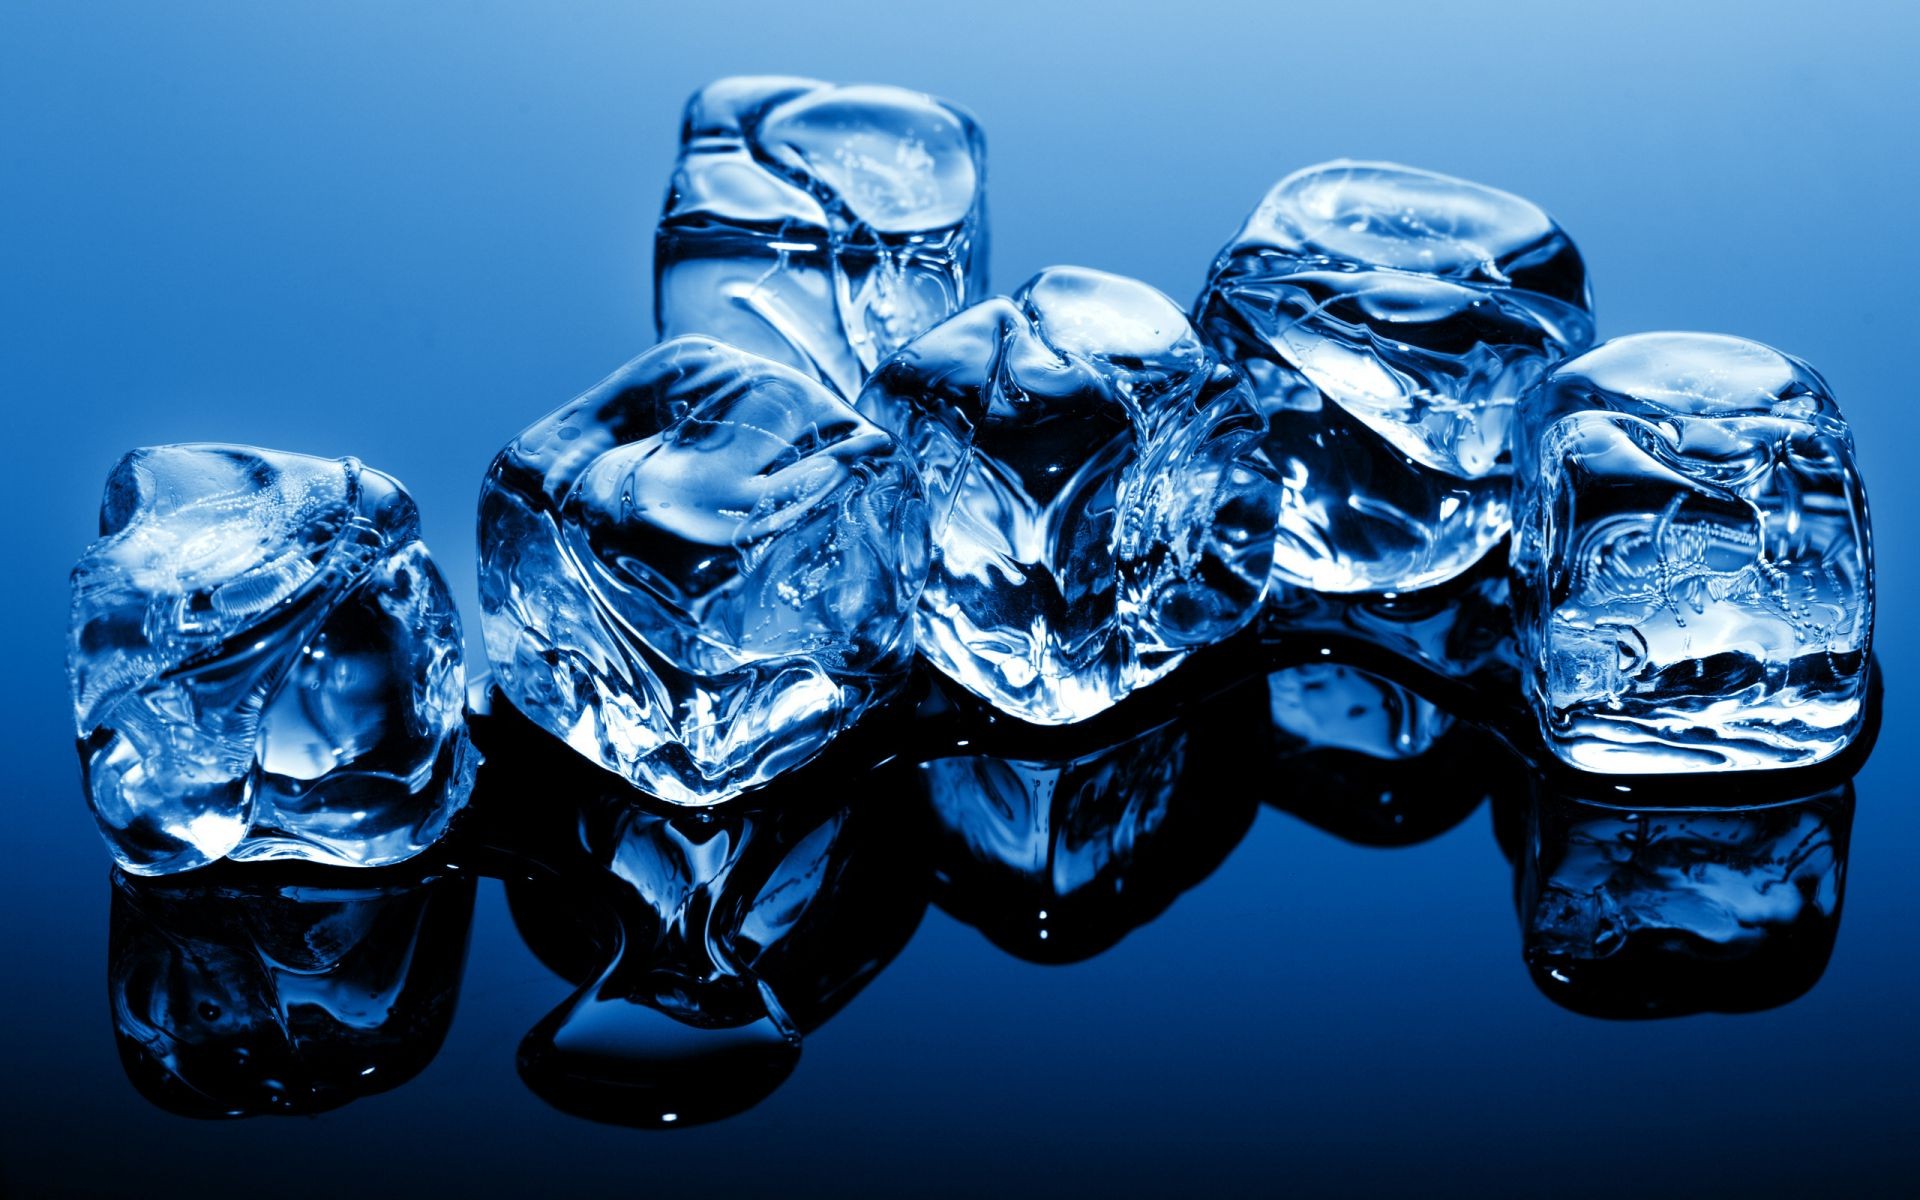 капельки и вода понятно падение воды чистота пузырь мокрый чистые гладкая холодная бирюза прозрачный пить отражение движения поток кристалл жидкость свет всплеск стекло